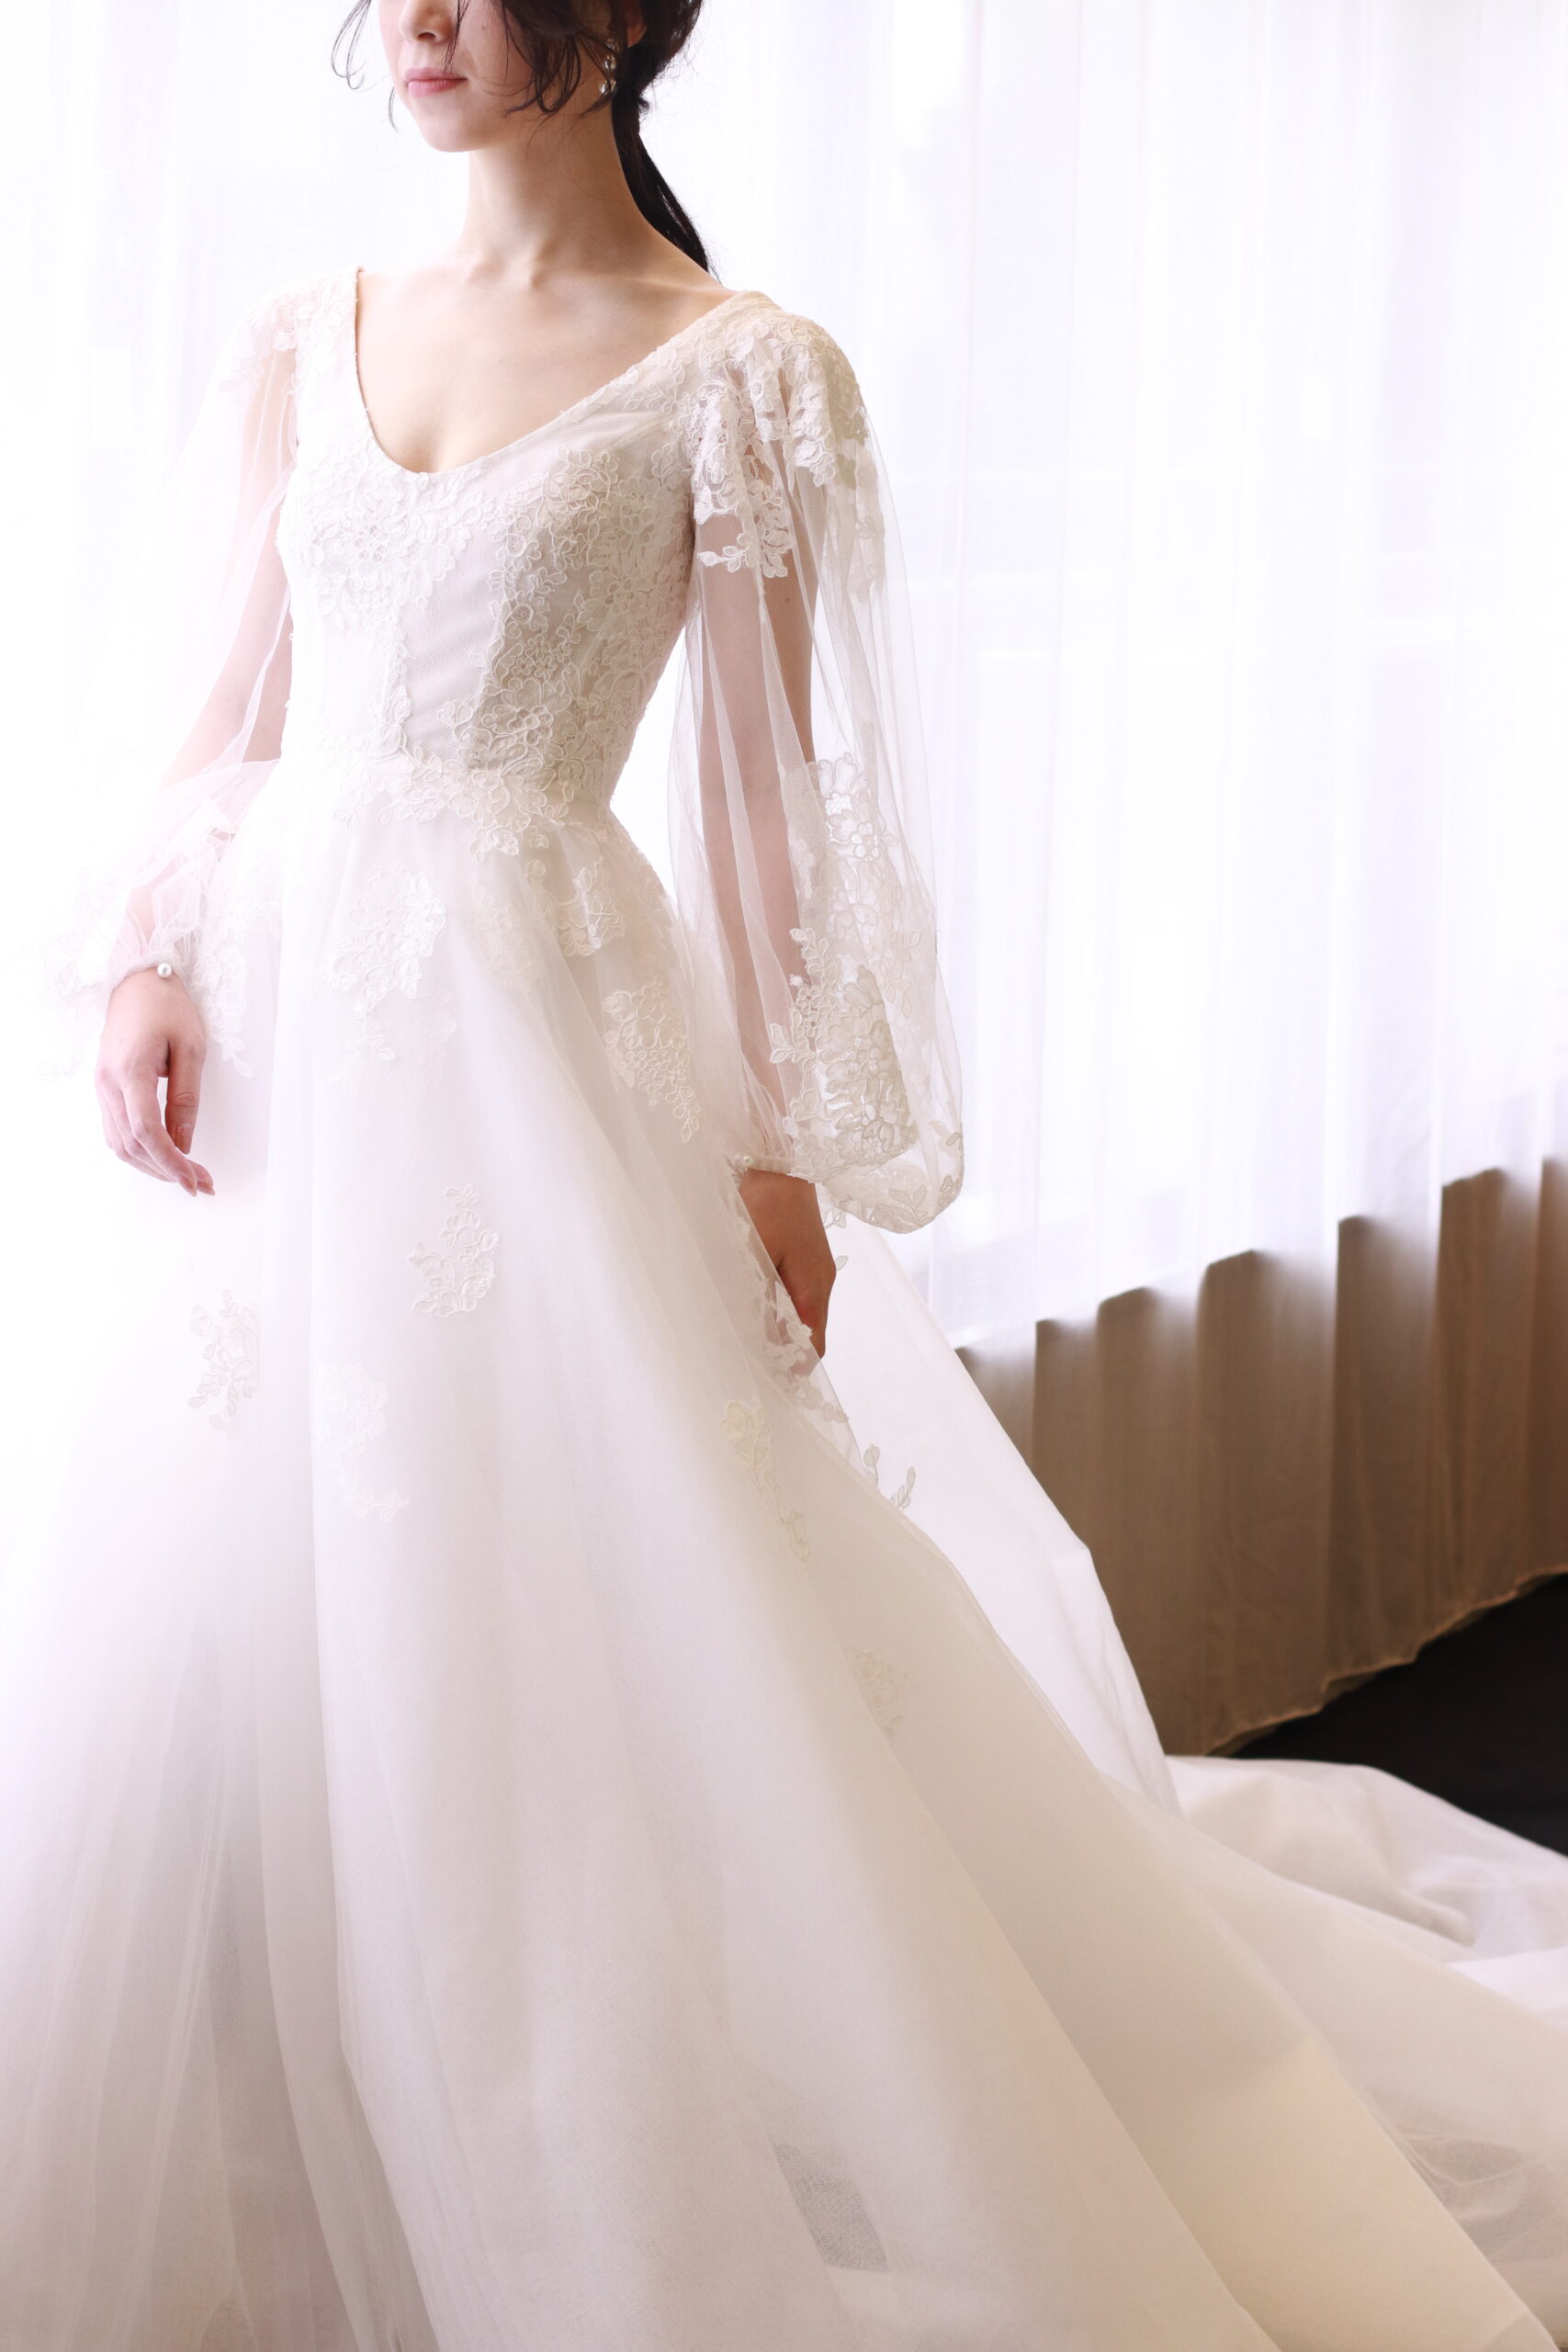 モニークルイリエの新作ウェディングドレスはAラインにロングスリーブの上品なデザインが特長のウェディングドレスです。コードリバーレースの施されたウェディングドレスは柔らかな花嫁姿を演出いたします。